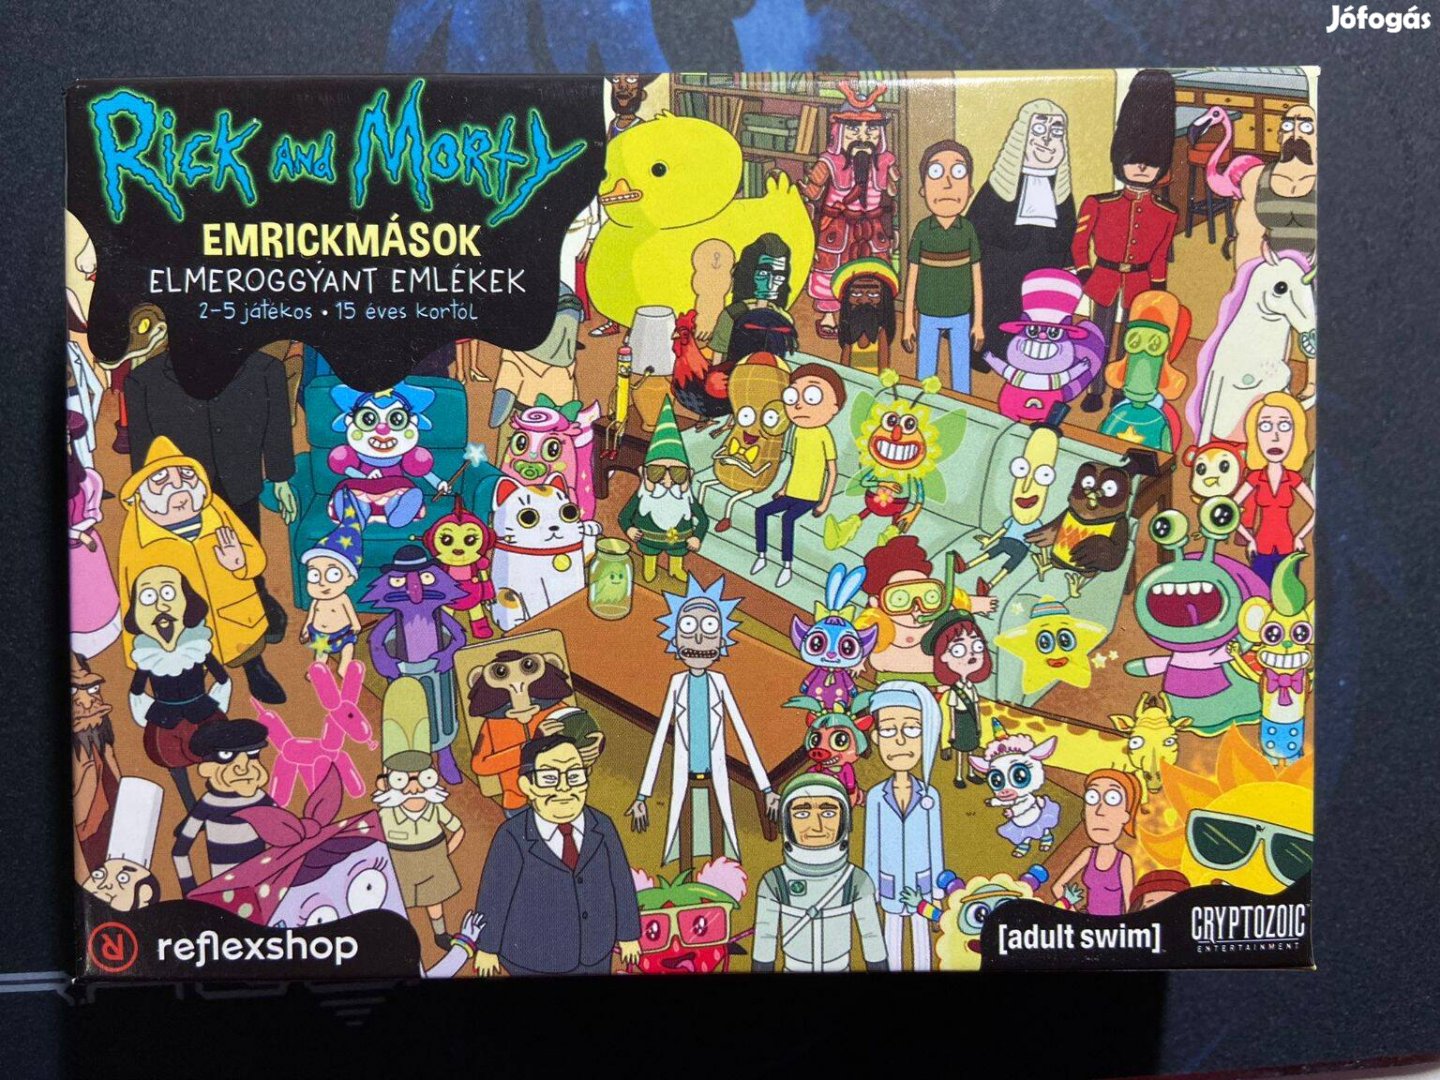 Rick & Morty - Emrickmások - Elmeroggyant emlékek társasjáték